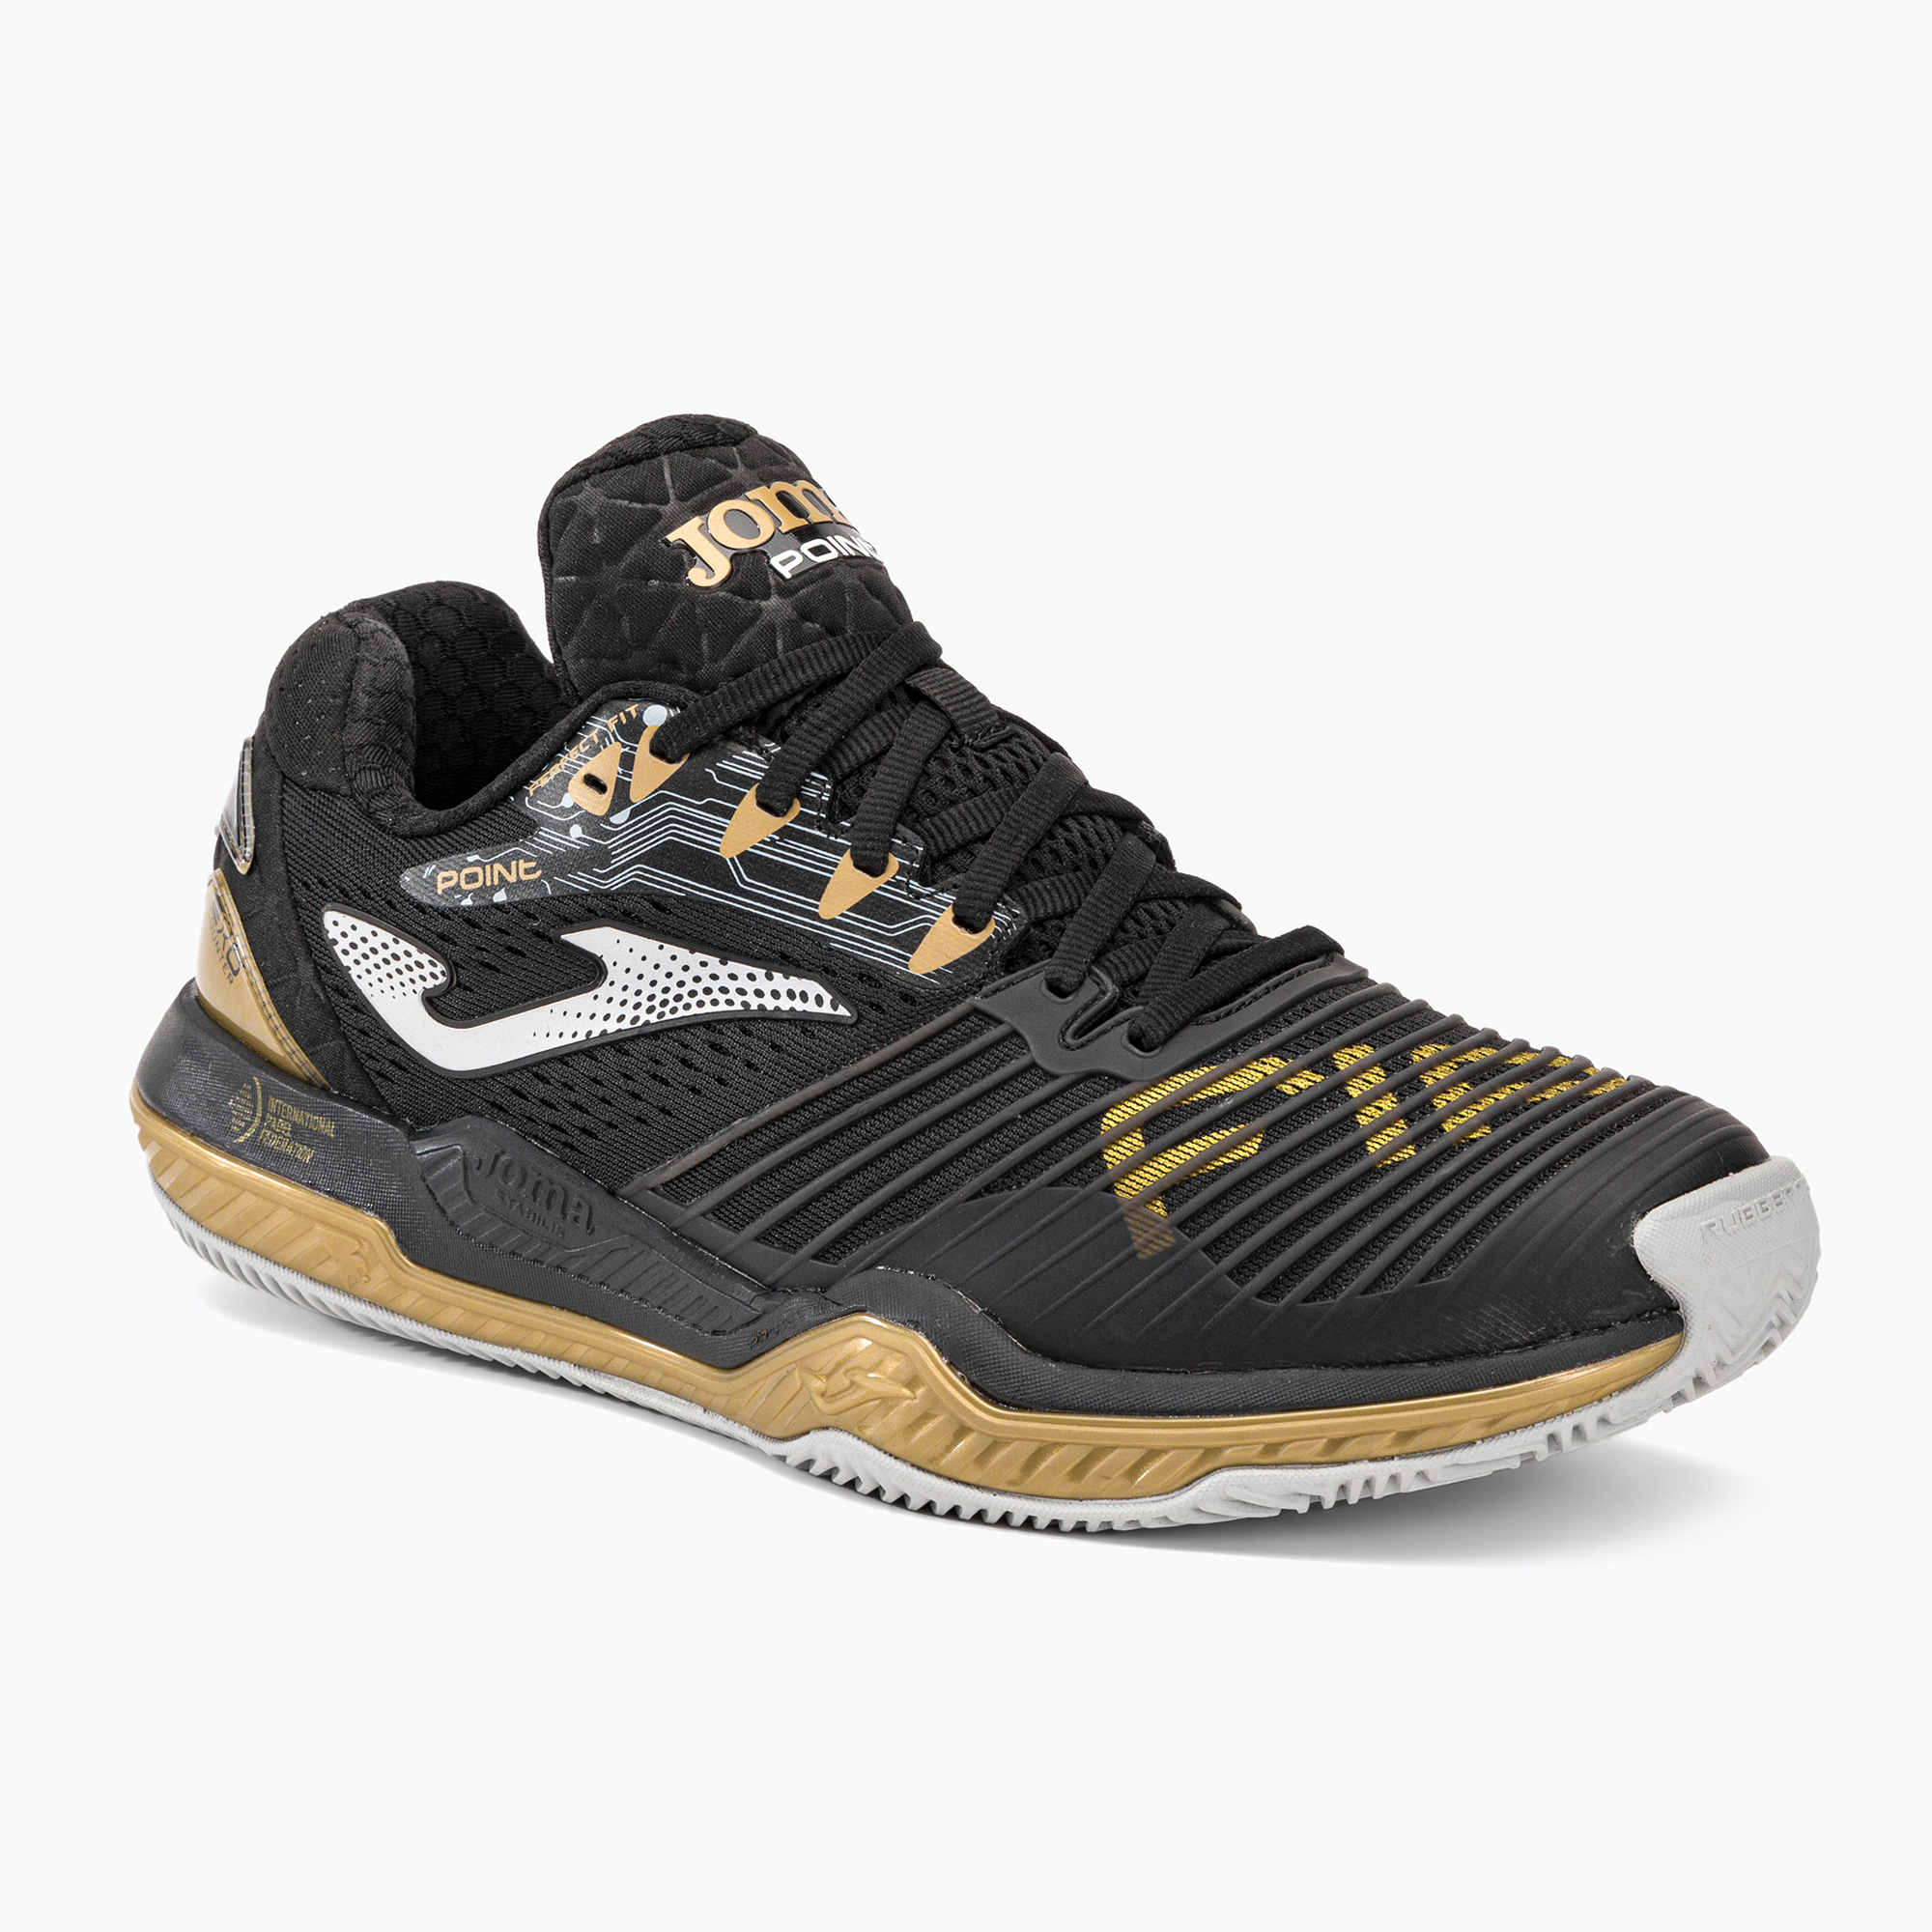 Joma T.Point pantofi de tenis pentru bărbați negru și auriu TPOINS2371P